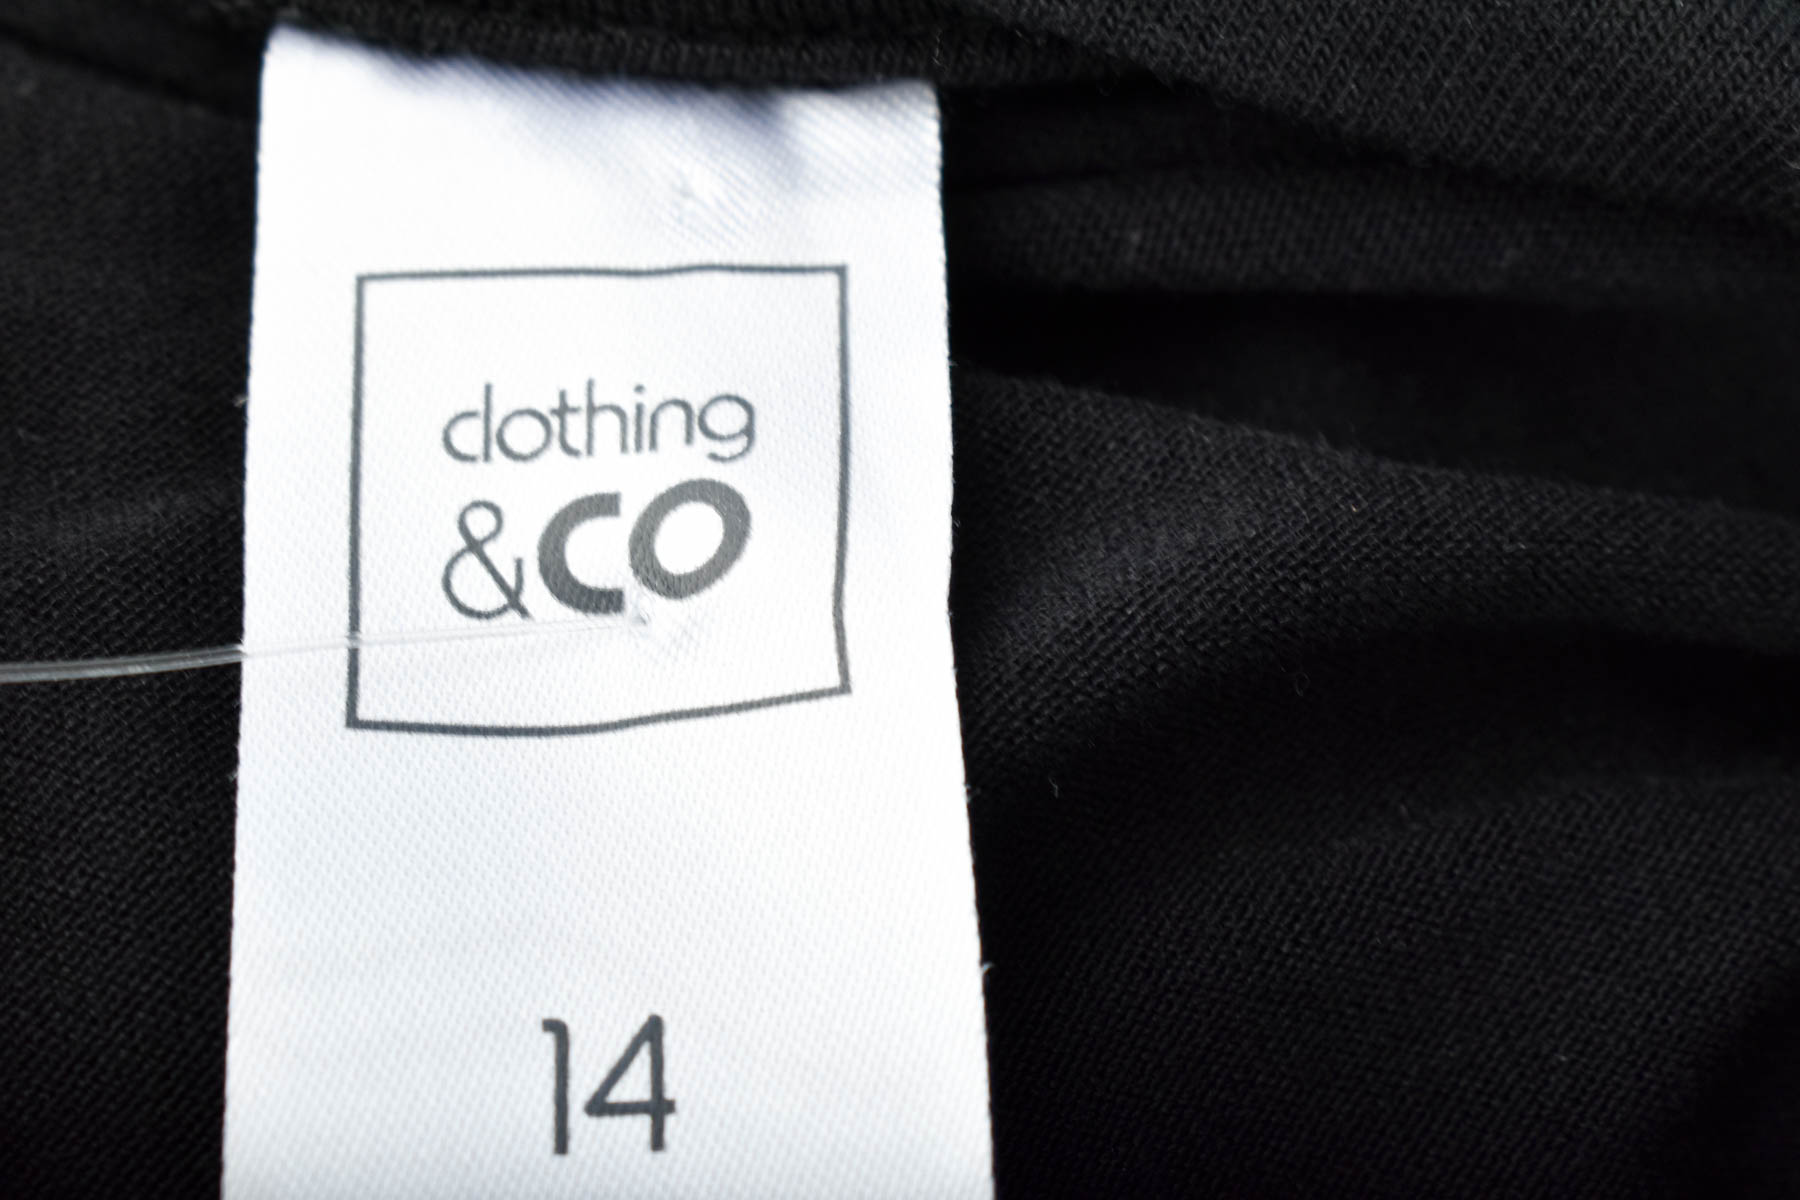 Дамска тениска - Clothing & CO - 2